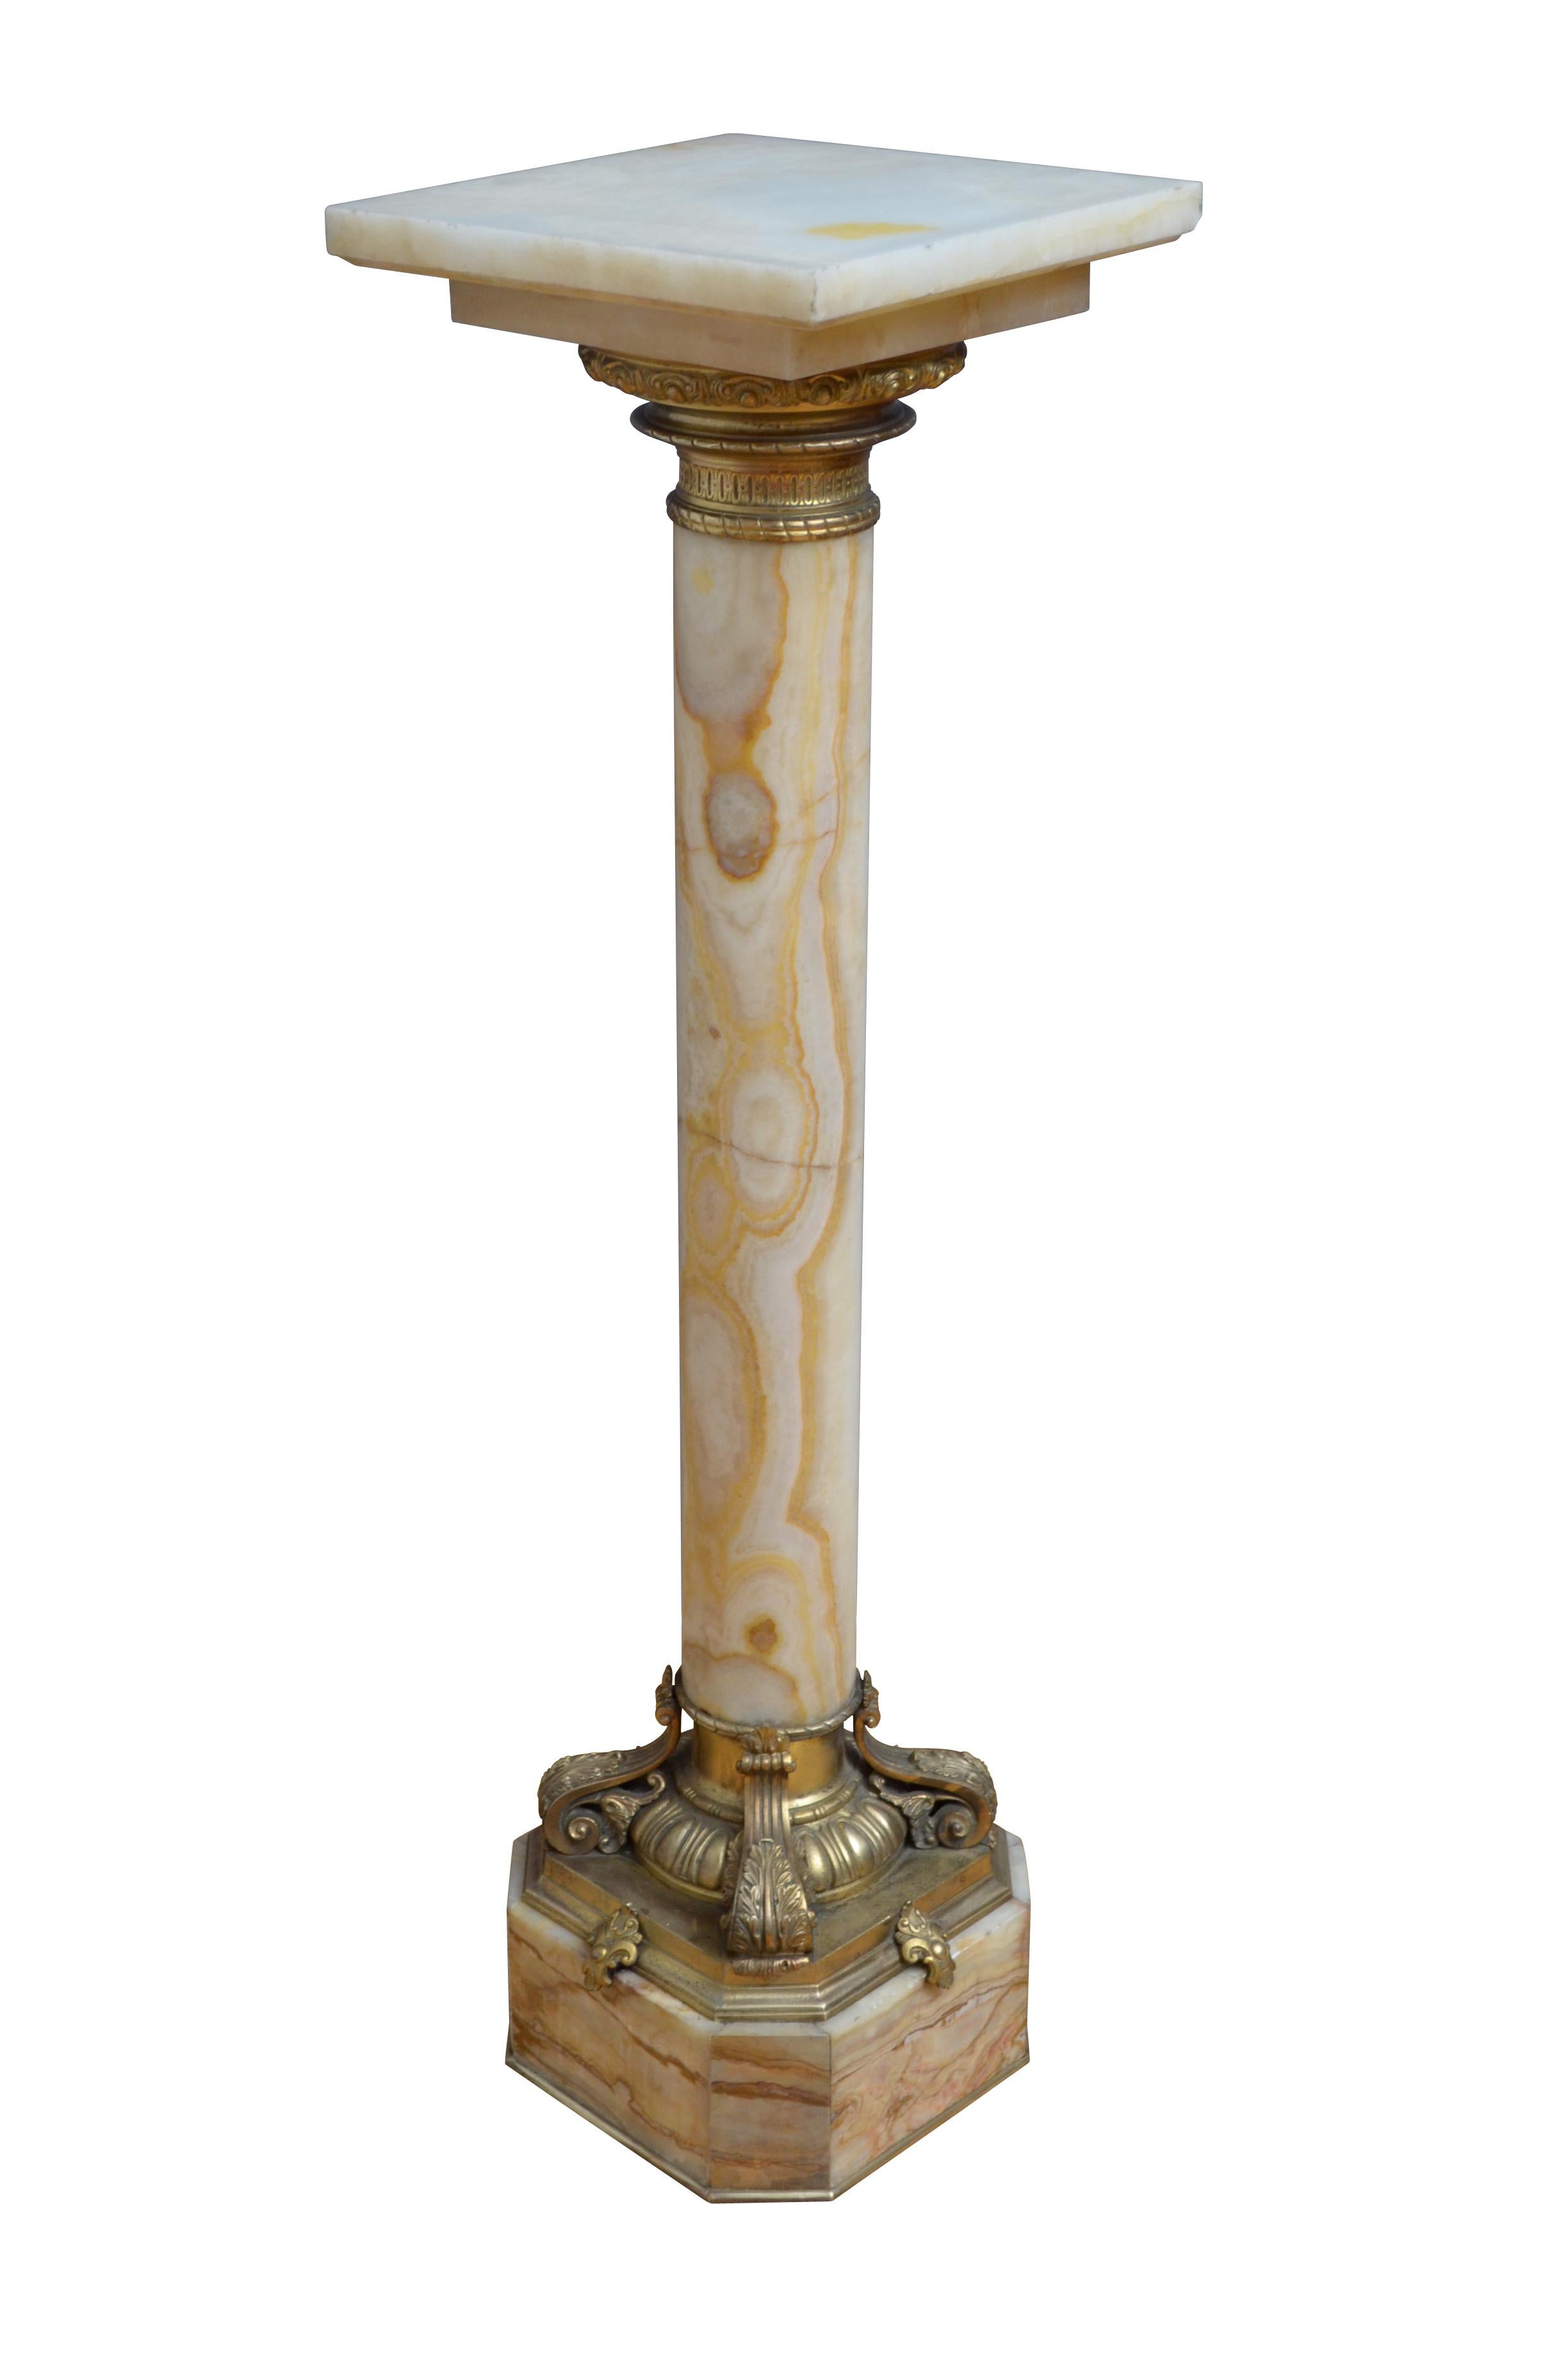 Remarquable piédestal en onyx du XIXe siècle, avec un plateau tournant et un collier en bronze doré en dessous, une imposante colonne aux couleurs variées se terminant par une très belle base à décor d'œuf et de fléchettes et quatre feuilles en